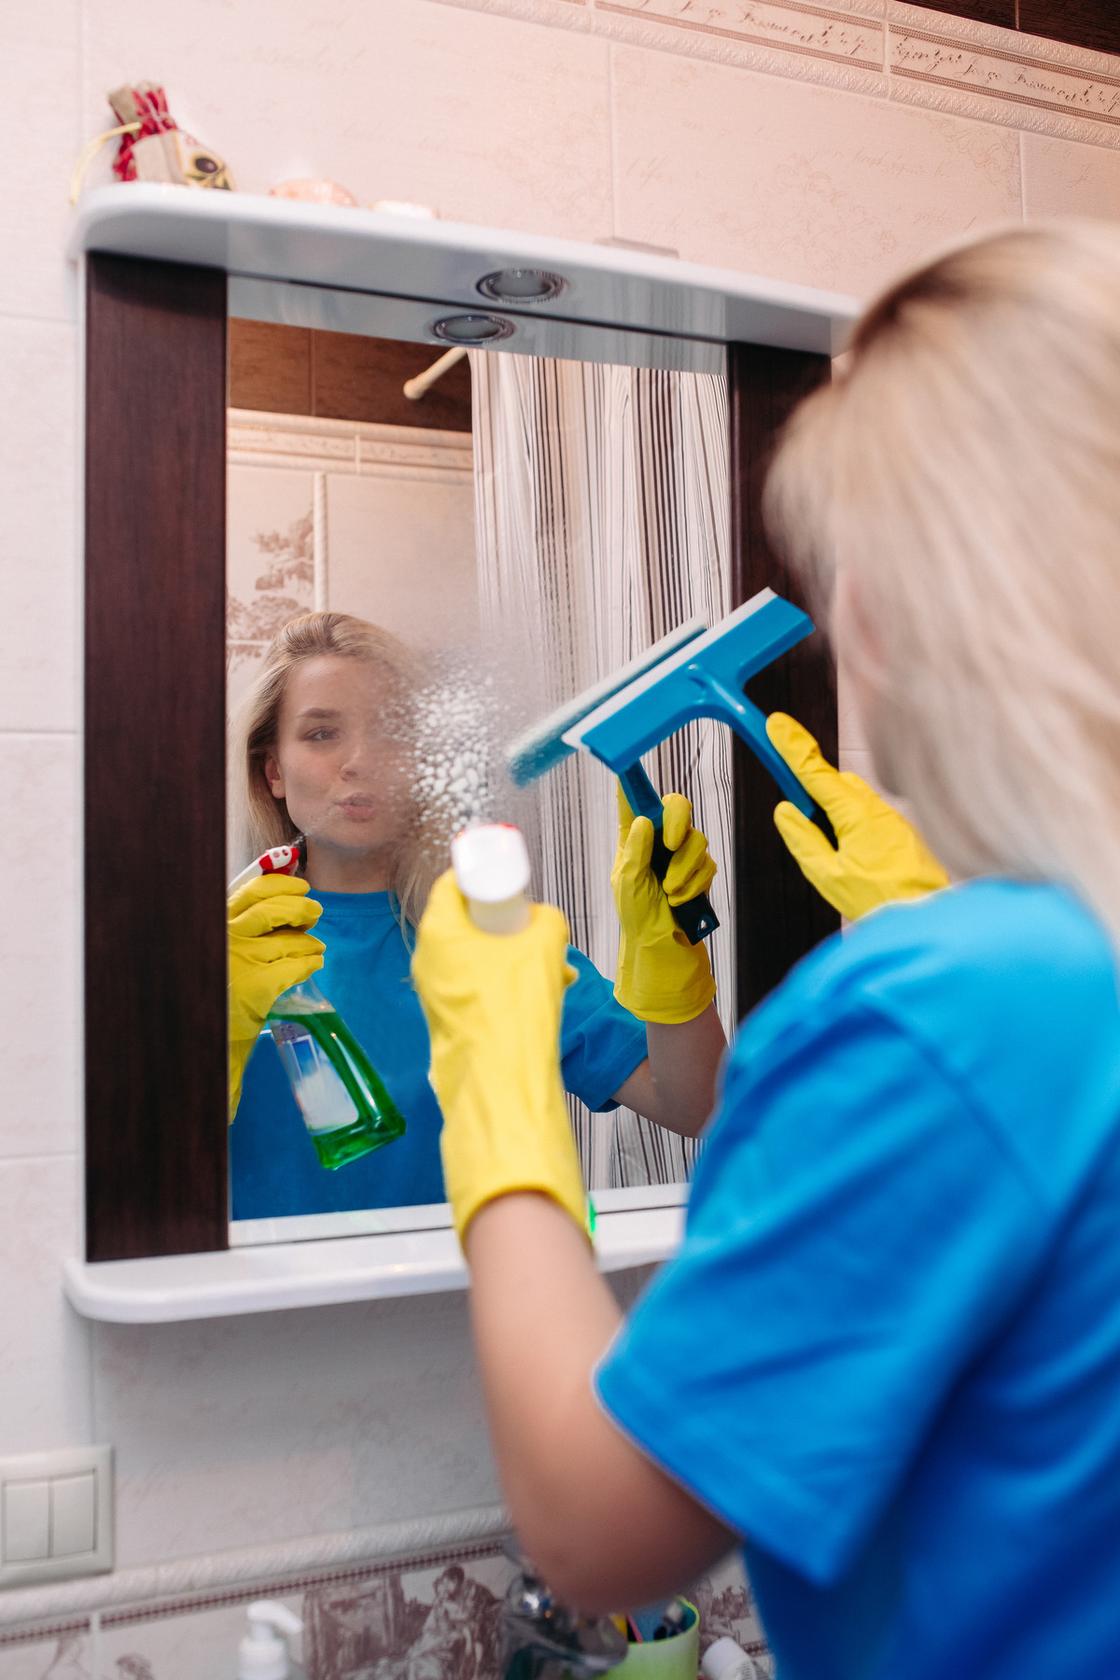 Женщина моет зеркало ракелем. Она опрыскивает поверхность чистящимспреем